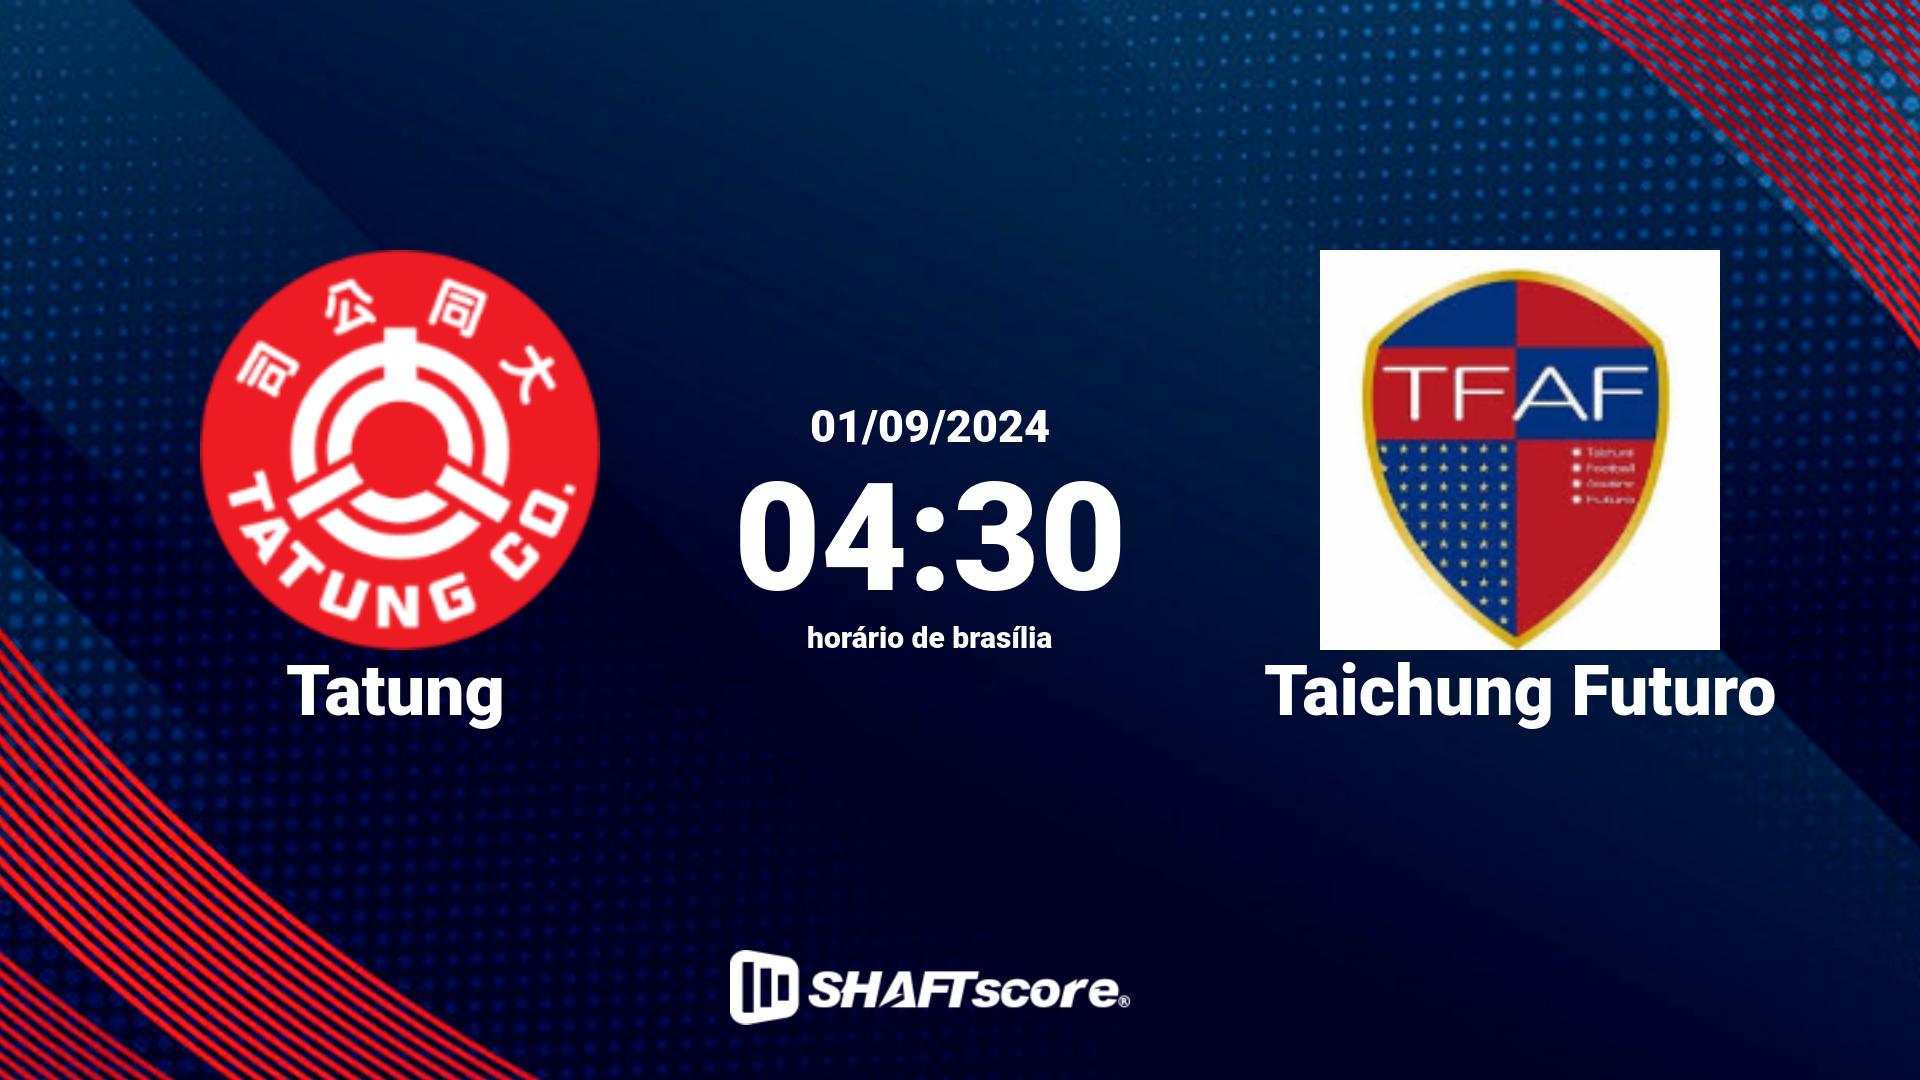 Estatísticas do jogo Tatung vs Taichung Futuro 01.09 04:30